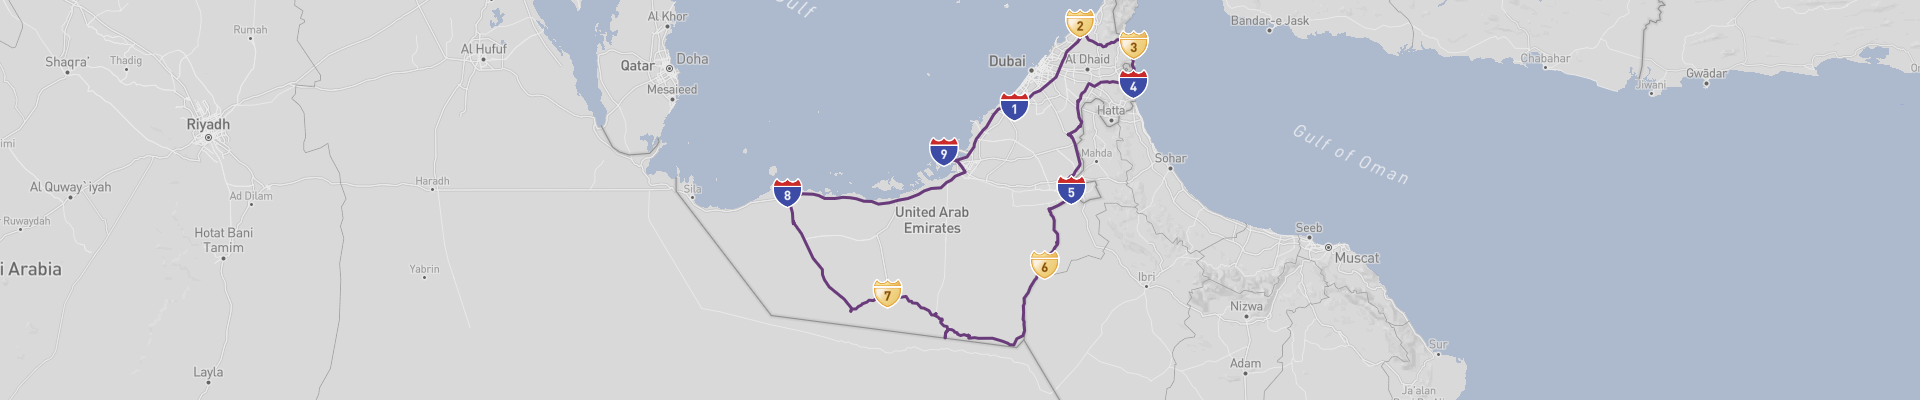 Itinéraire Émirats arabes unis